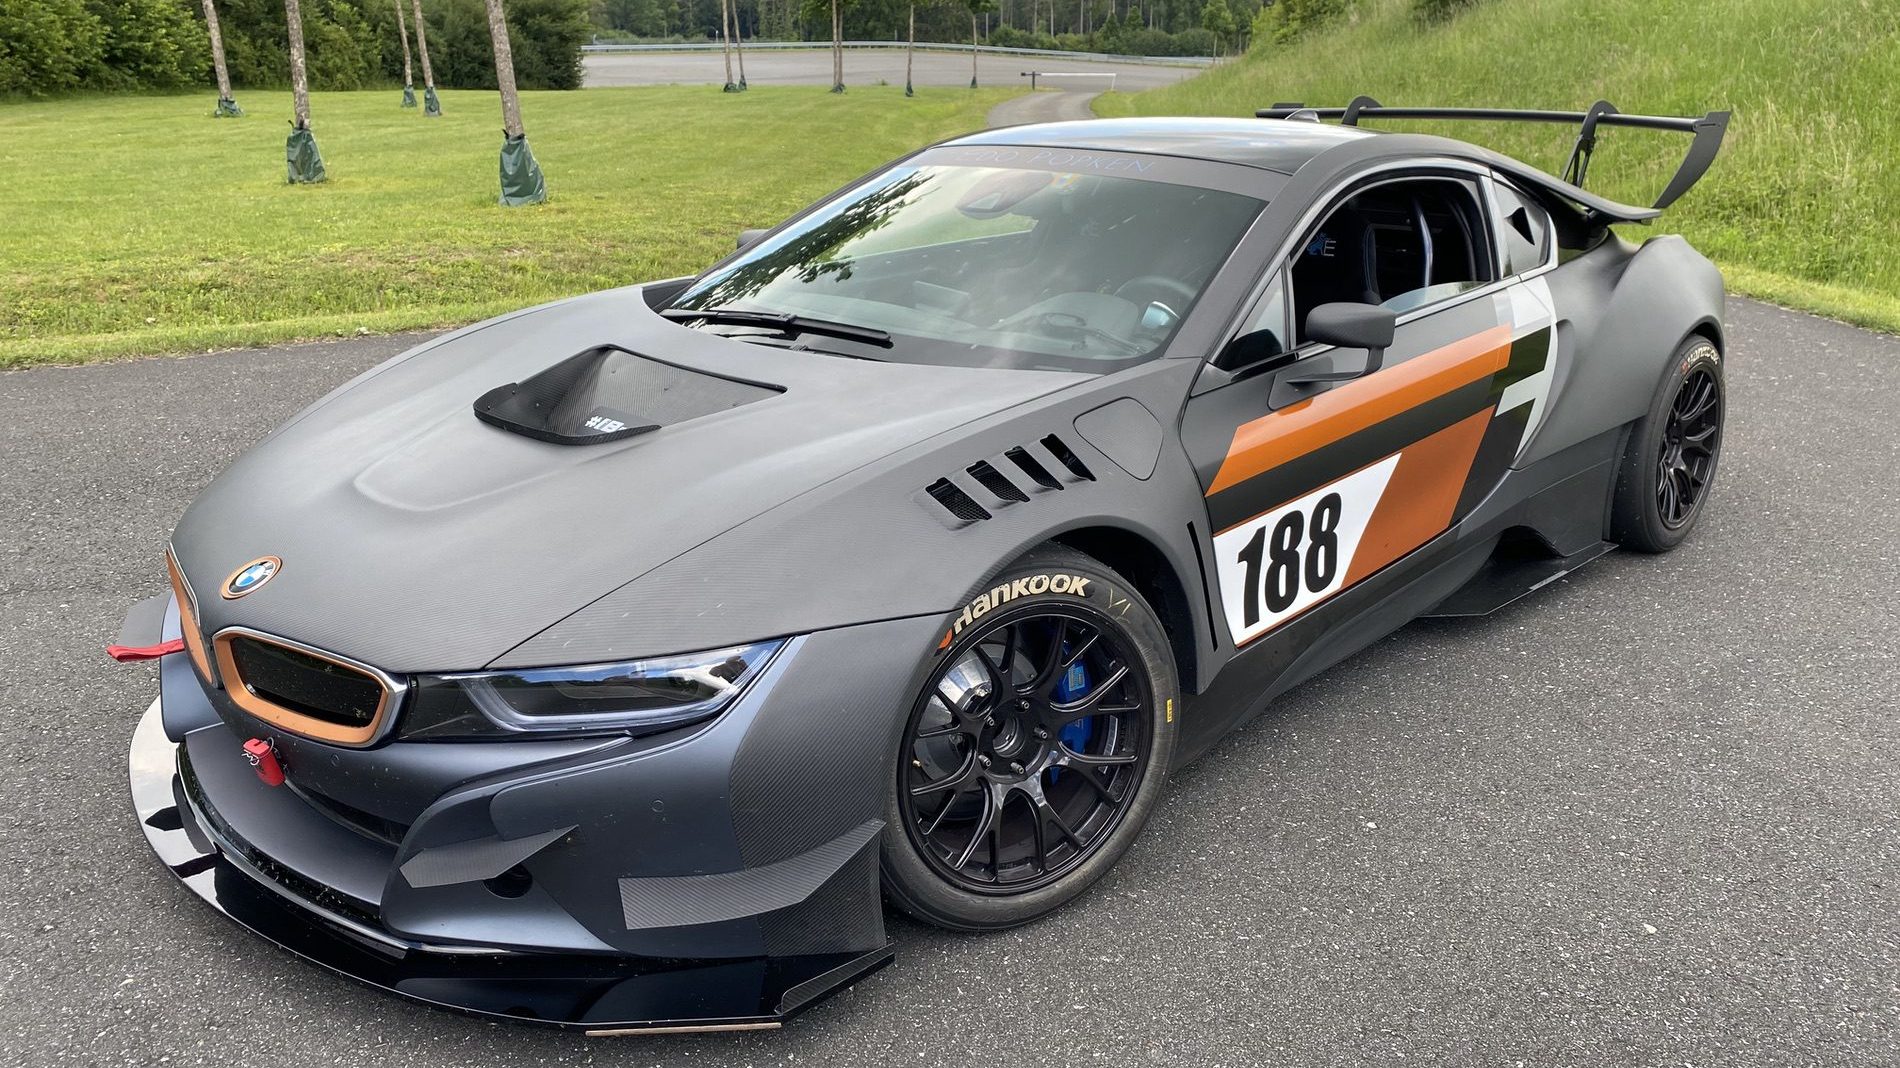 BMW’s Hybrid Supercar Lives On Edo Motorsport’s i8 “Procar” BimmerLife